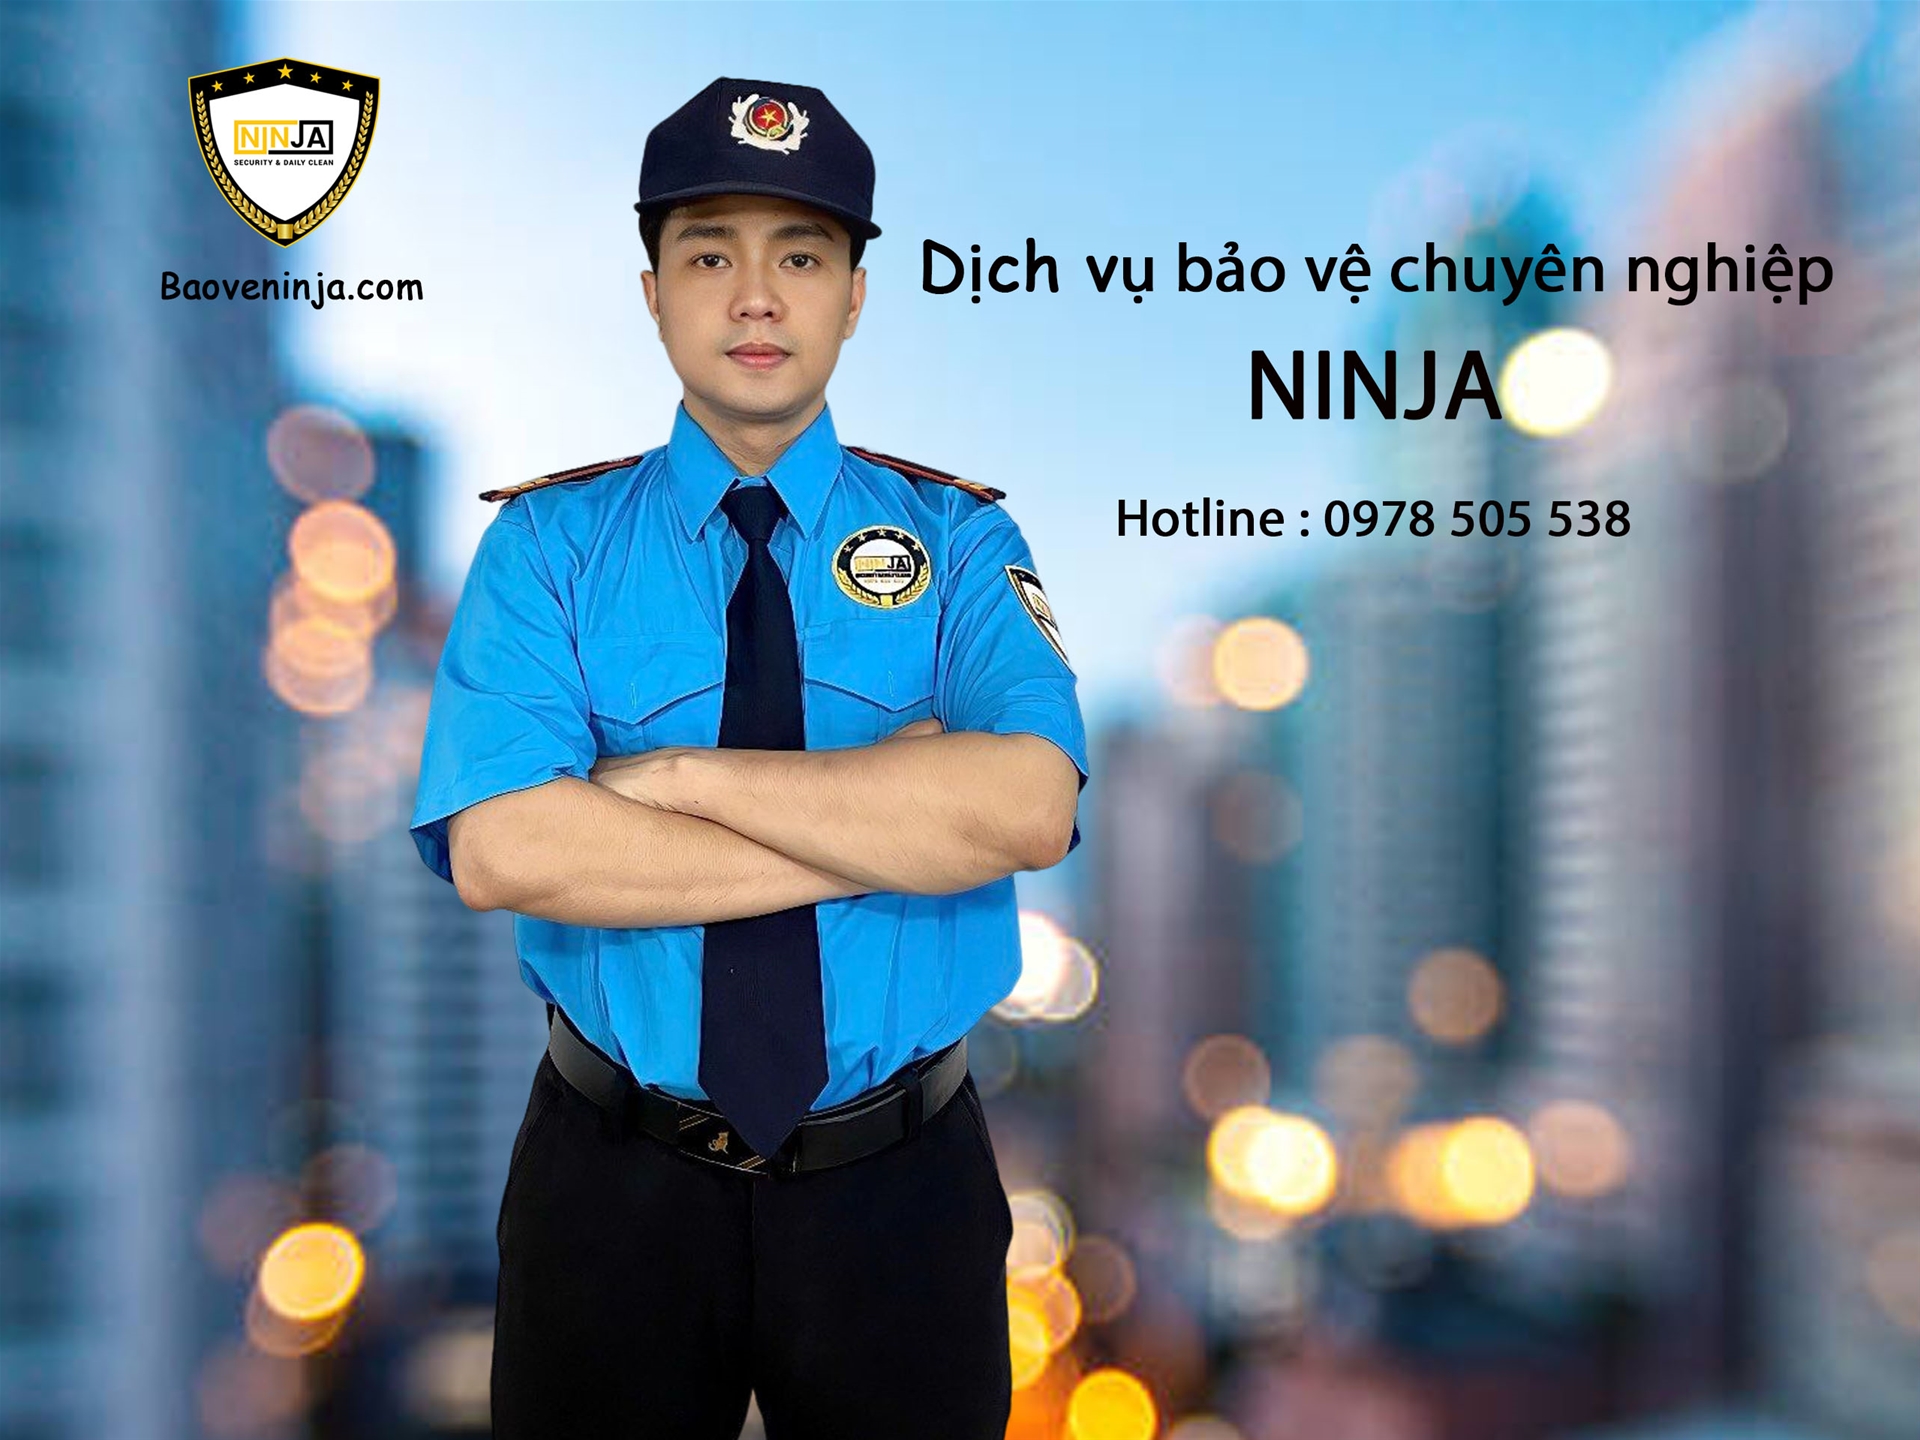 6. Cam kết của dịch vụ bảo vệ Ninja